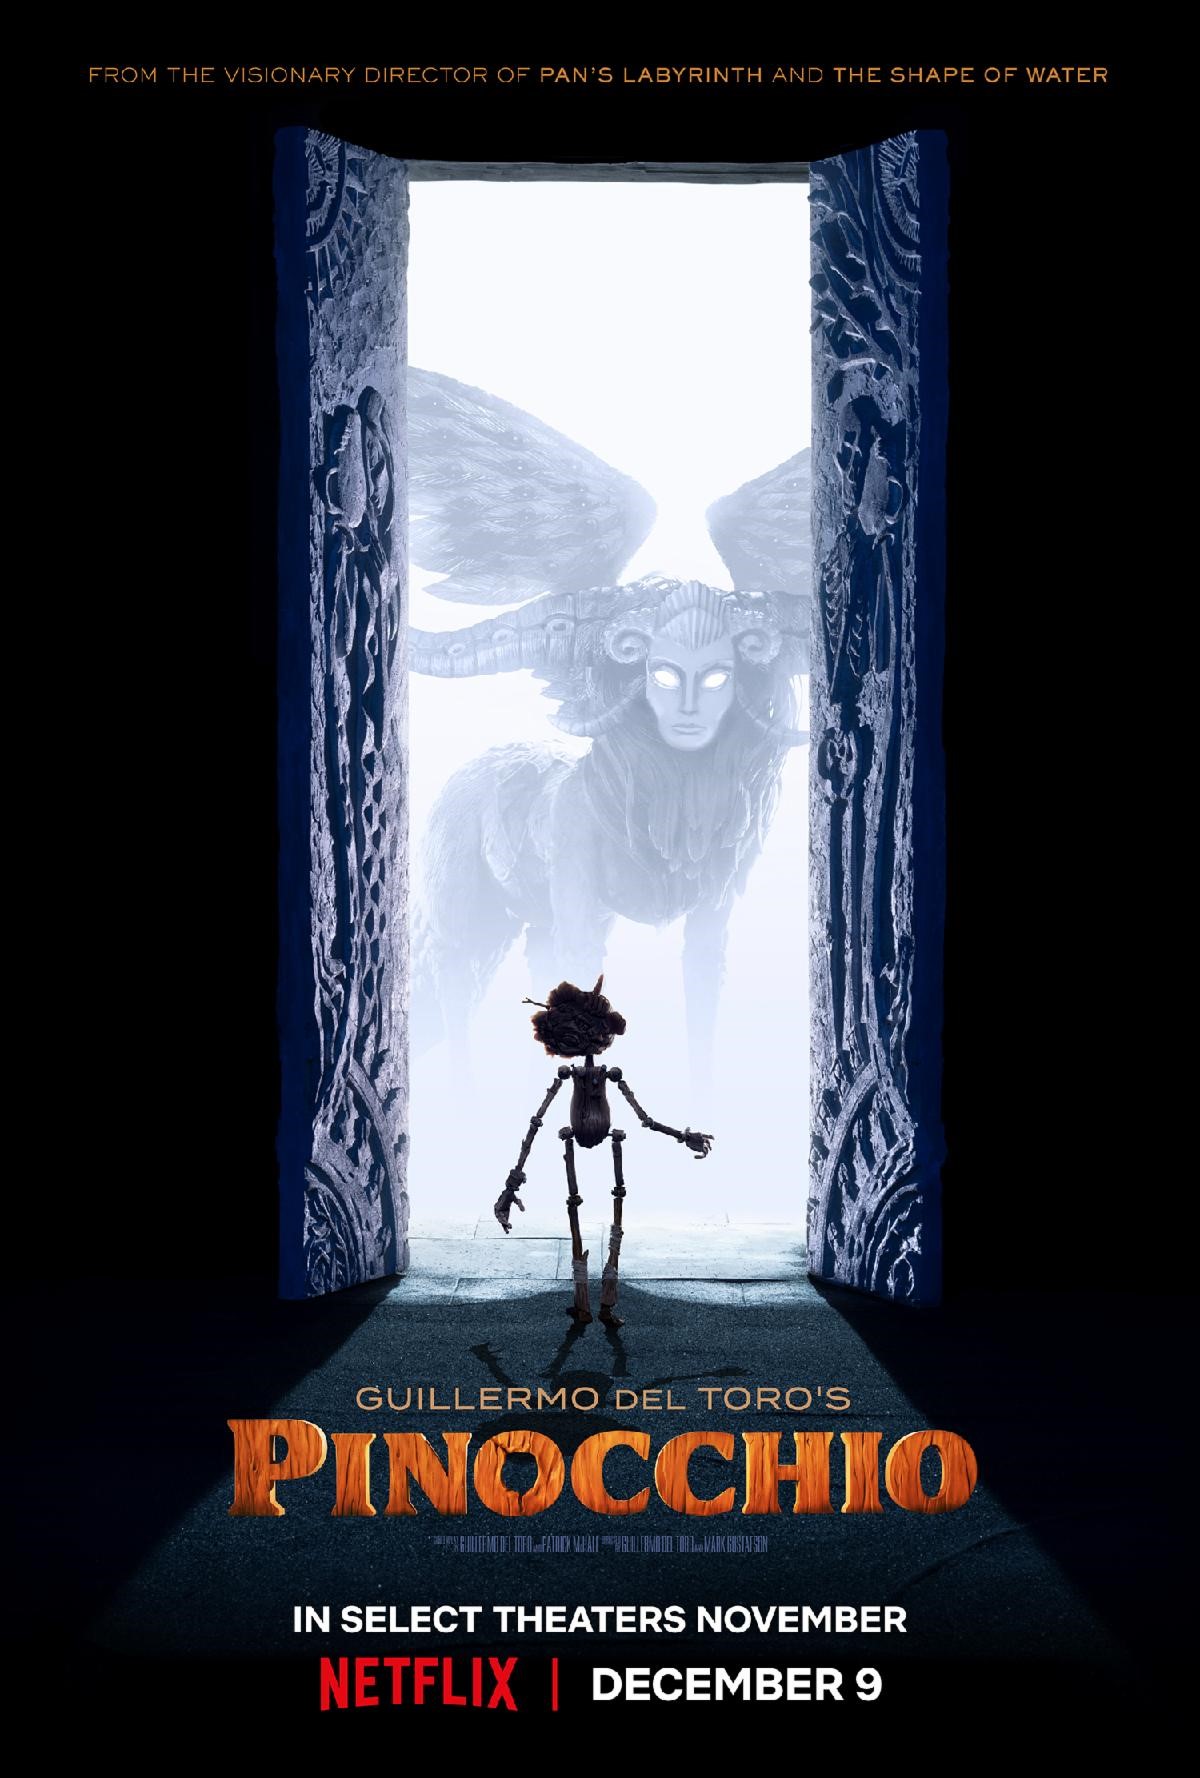 ดูหนังออนไลน์ฟรี Guillermo del Toro s Pinocchio (2022) พิน็อกคิโอ หุ่นน้อยผจญภัย โดยกีเยร์โม เดล โตโร